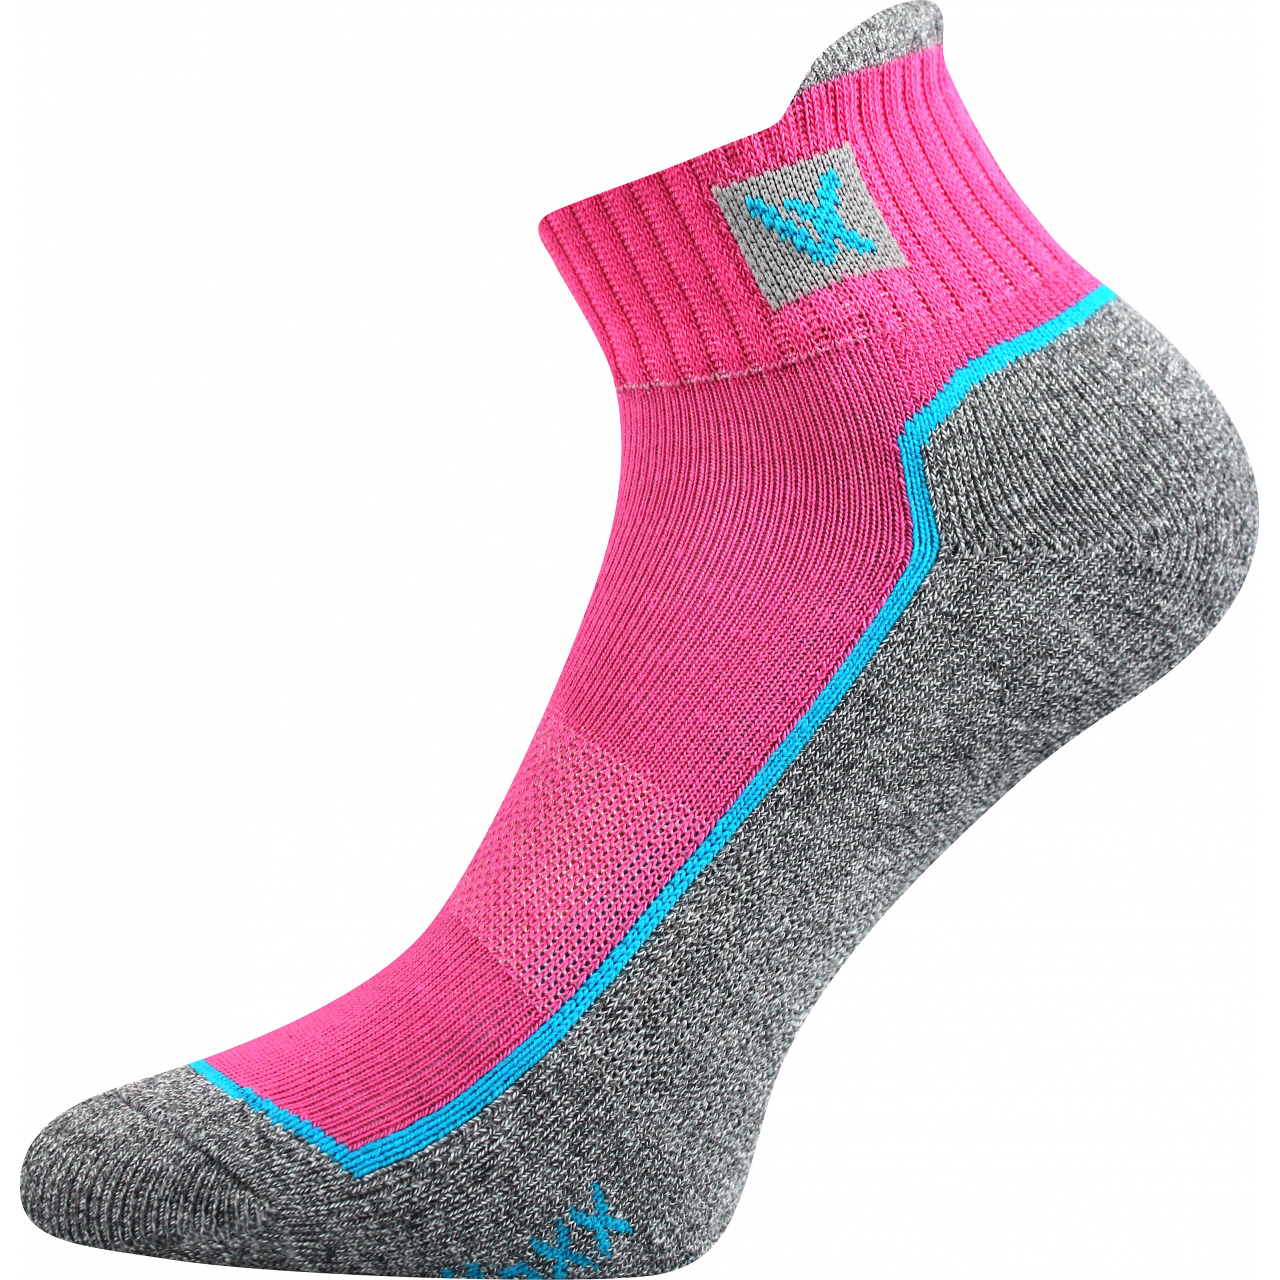 Ponožky unisex sportovní Voxx Nesty 01 - růžové-modré, 39-42